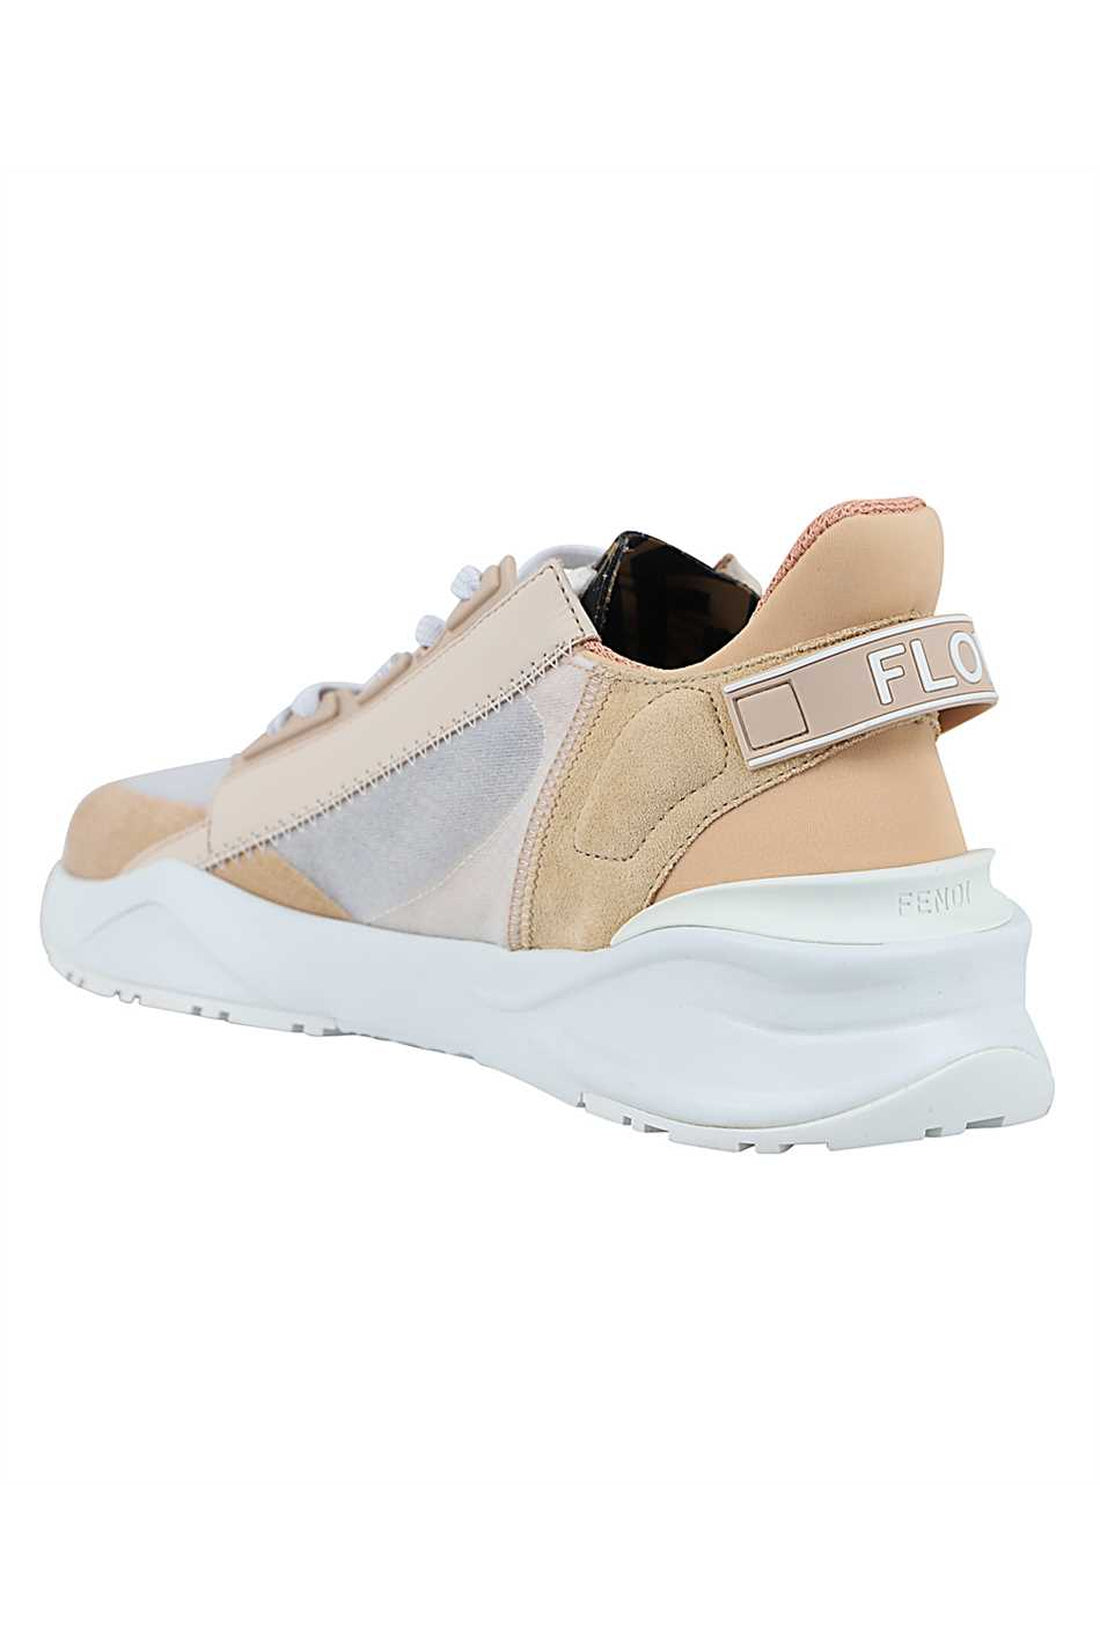 Fendi-OUTLET-SALE-Fendi Flow low-top sneakers-ARCHIVIST